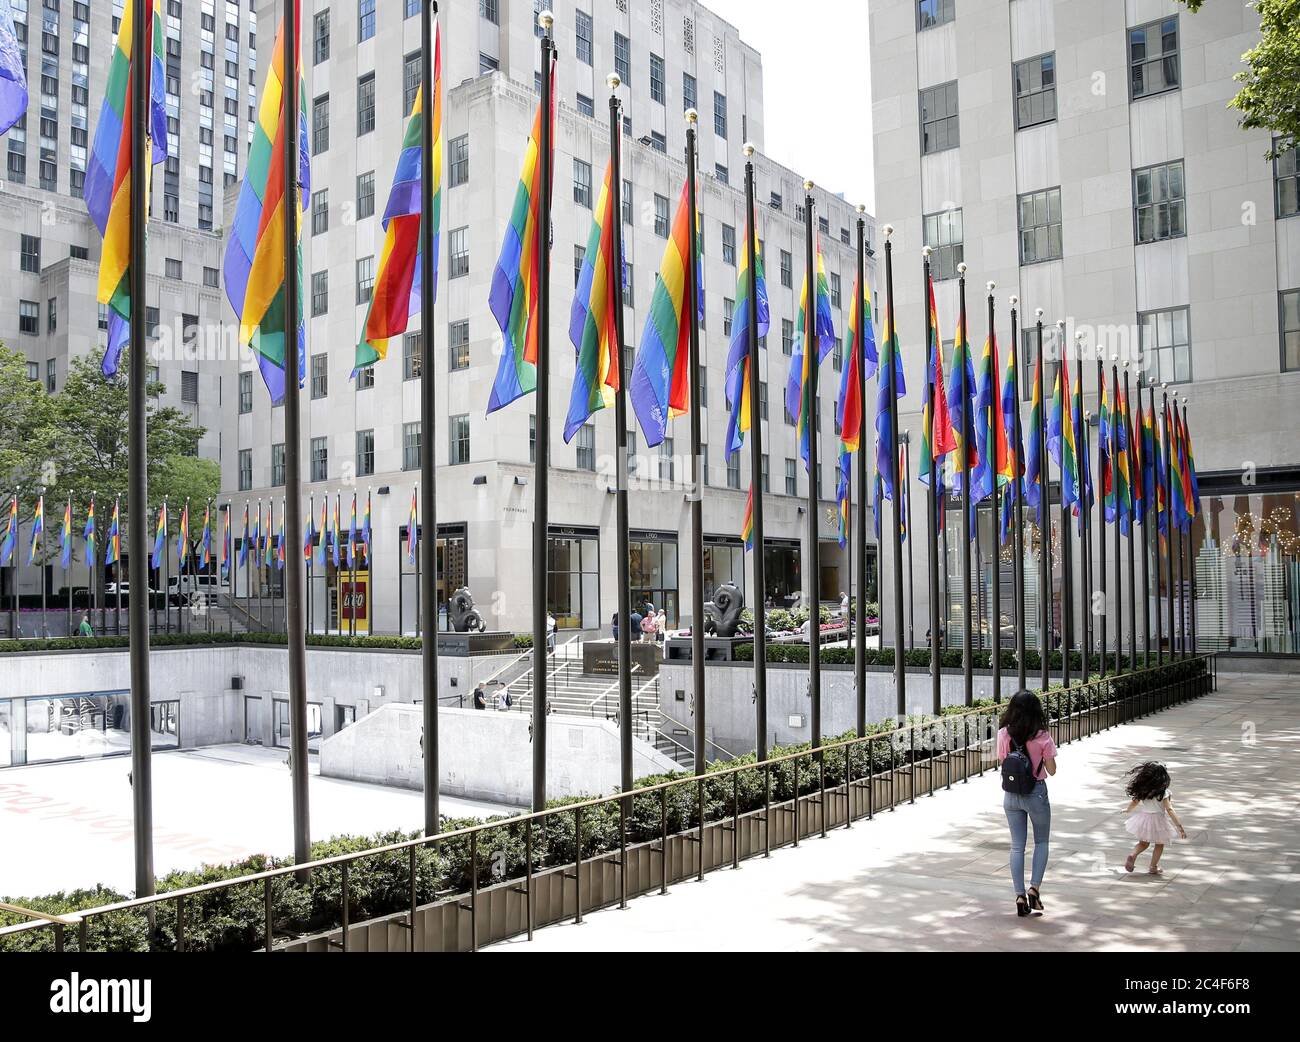 New York, Stati Uniti. 26 Giugno 2020. Le bandiere arcobaleno circondano il Rink al Rockefeller Center, che rimane vuoto da quasi tutti i pedoni venerdì 26 giugno 2020. Più di 100 bandiere colorate di arcobaleno si allineano al Rockefeller Center e rimarranno in vigore fino a domenica 28 giugno, fino al New York Pride March. New York City è entrata nella fase 2 di un piano di riapertura in quattro parti lunedì dopo essere stata chiusa per 3 mesi a causa del COVID-19. Foto di John Angelillo/UPI Credit: UPI/Alamy Live News Foto Stock